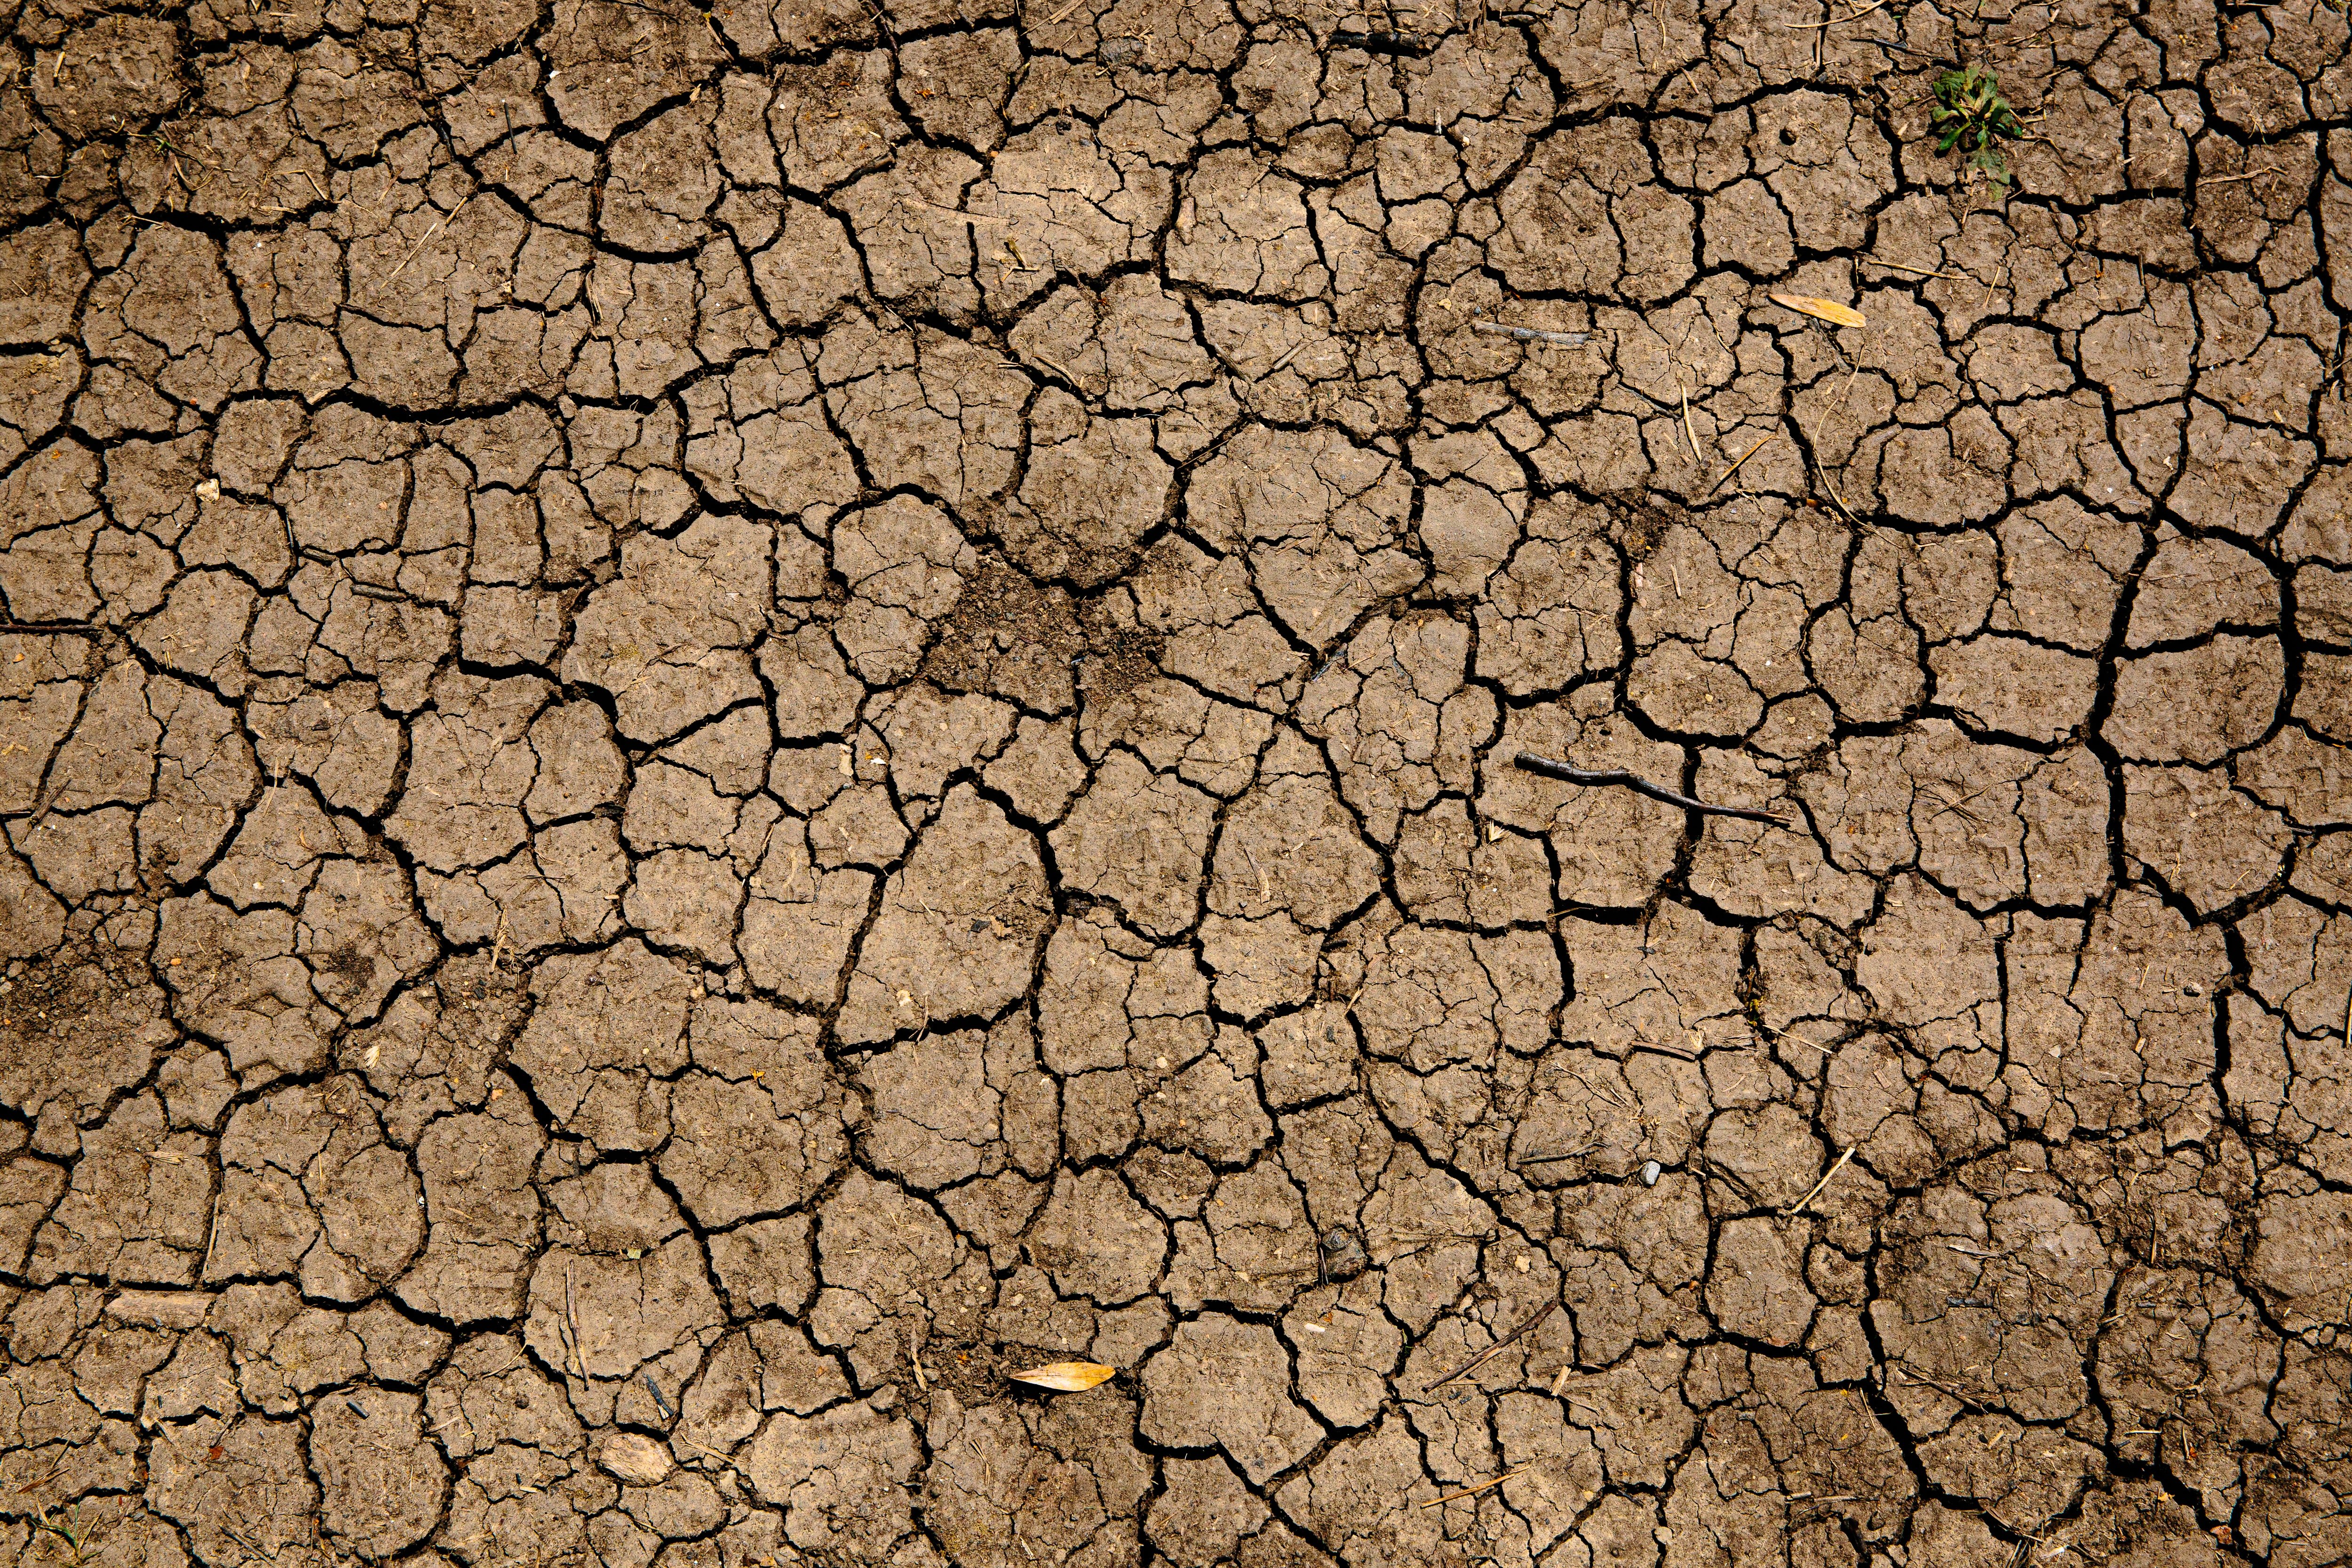 Bruselas, abierta a dar 250 millones a países afectados por la sequía como España